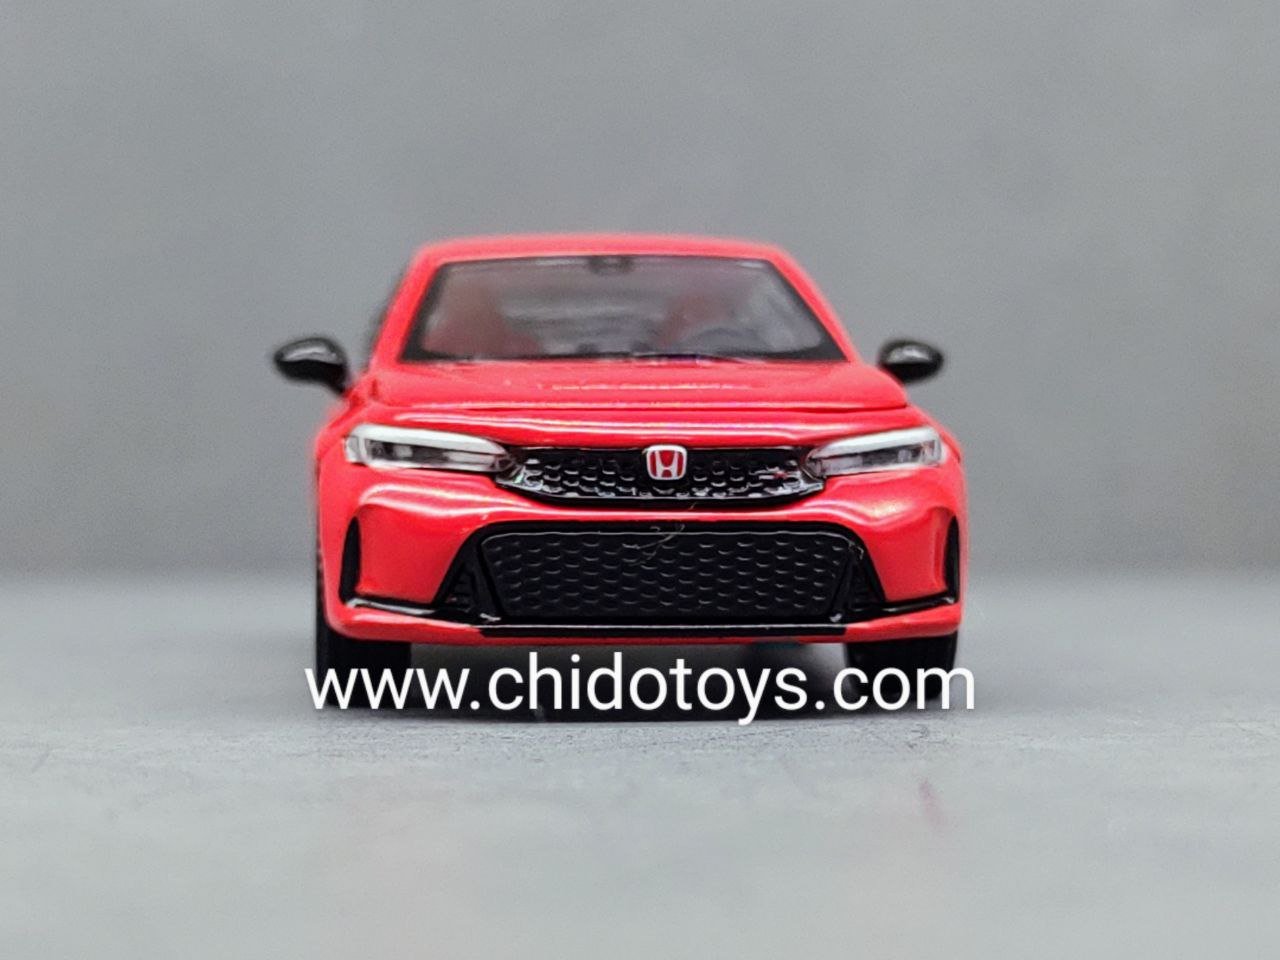 Auto a escala marca Pop Race escala 1/64 modelo Honda Civic Type R. - Chido Toys